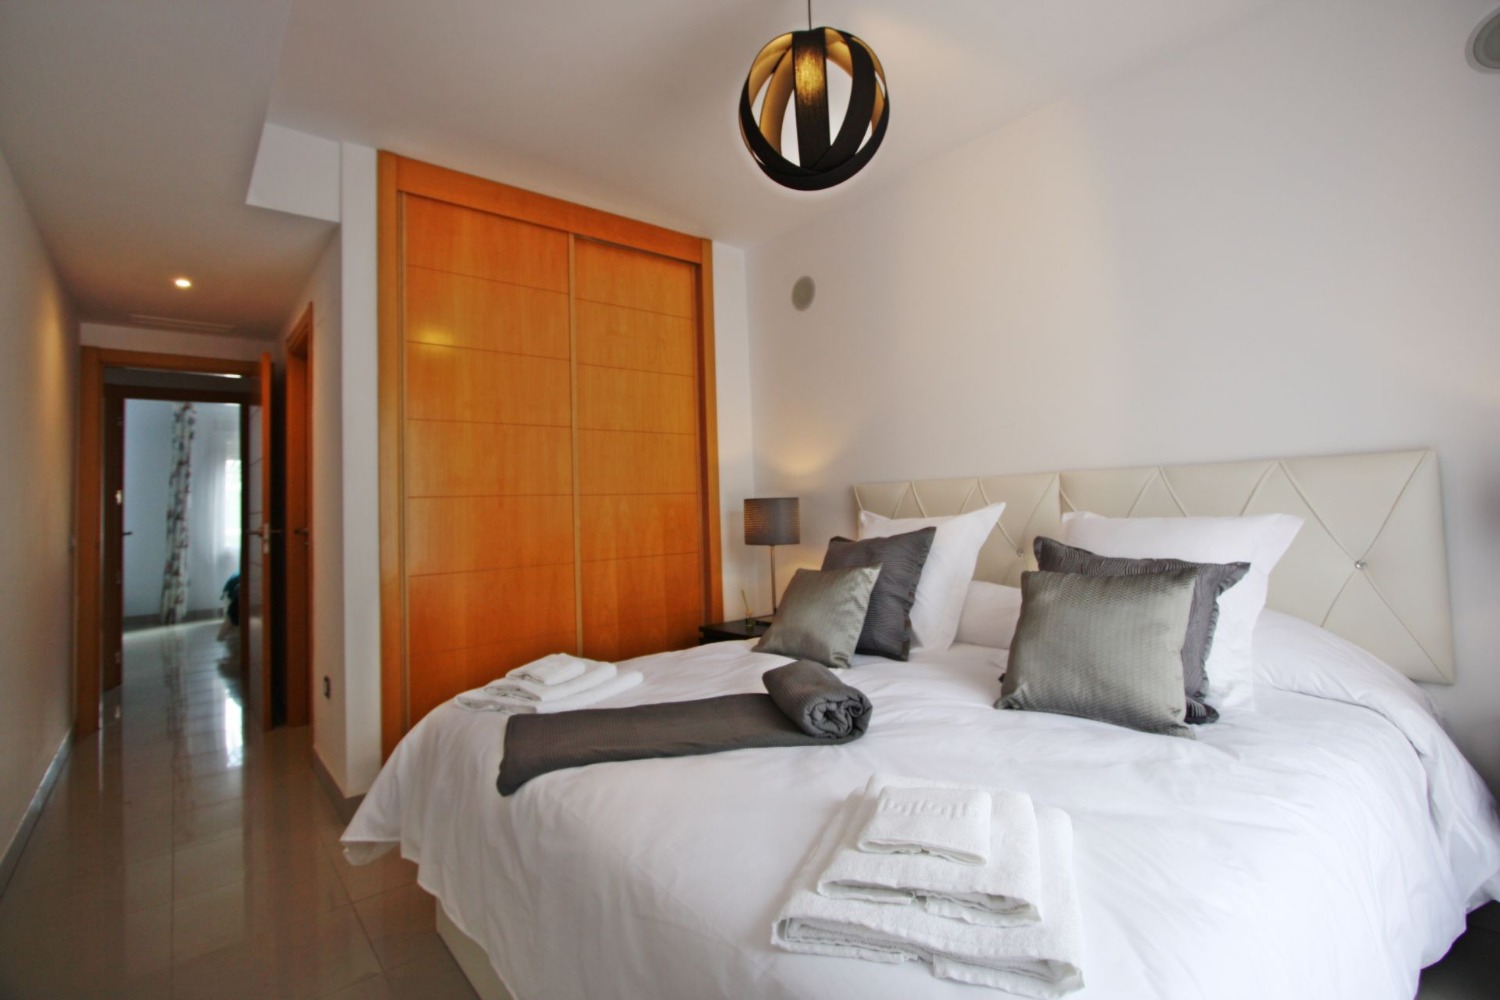 3 bedroom duplex, in excellent luxury community